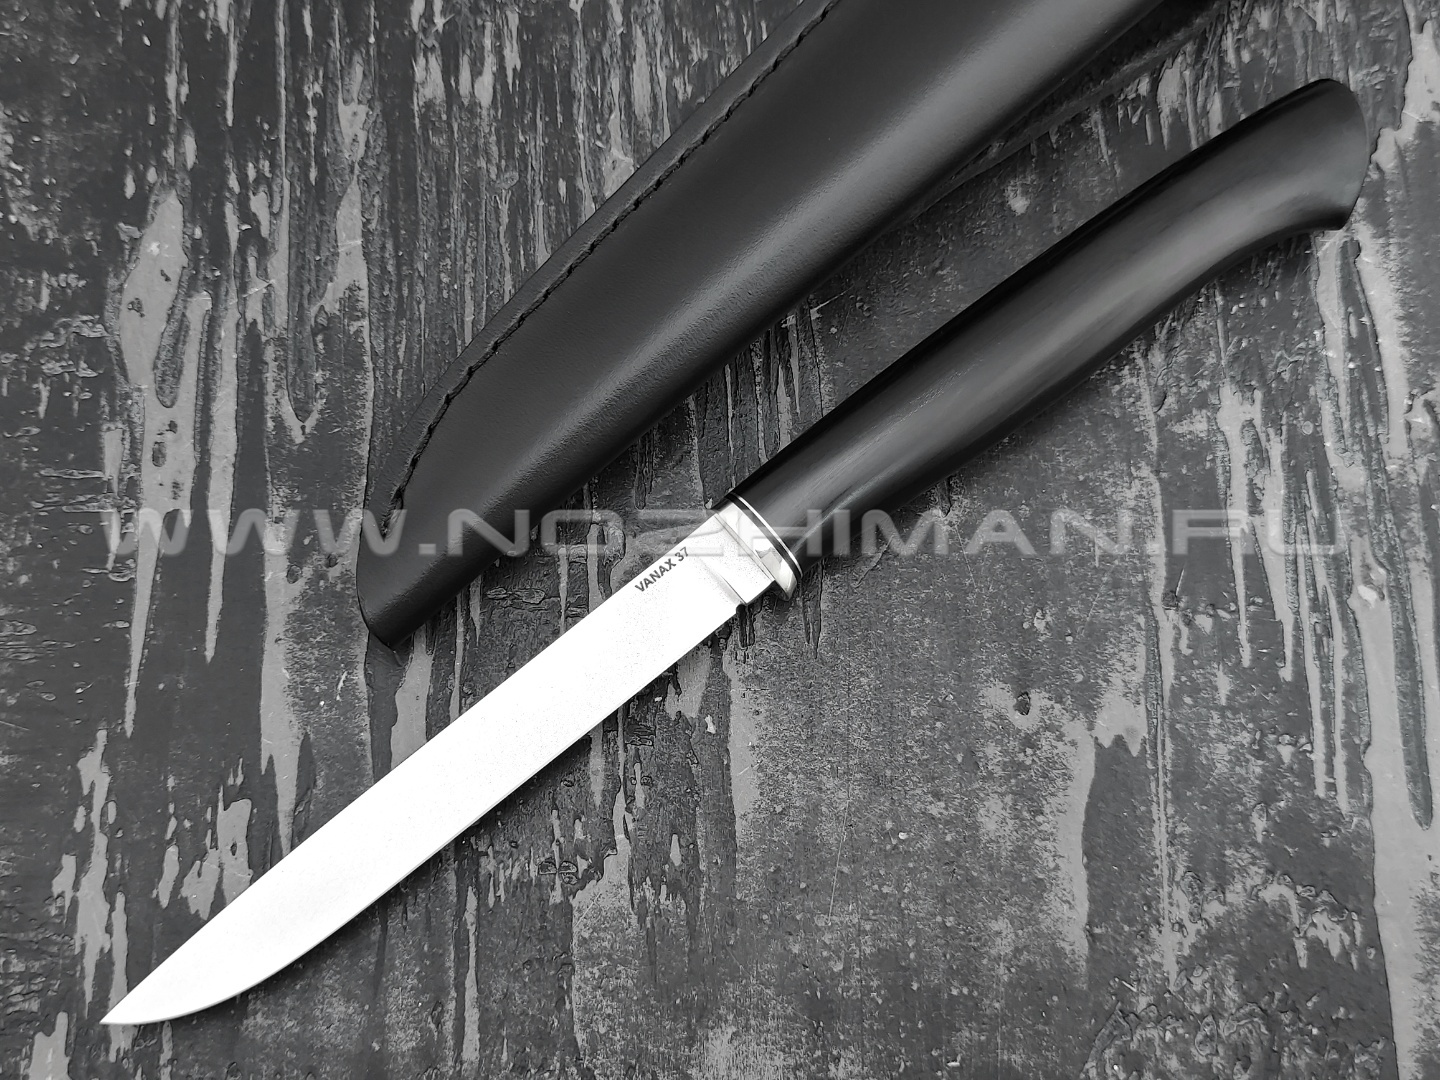 Кметъ нож Шило-2 сталь Vanax 37 рукоять G10, мельхиор